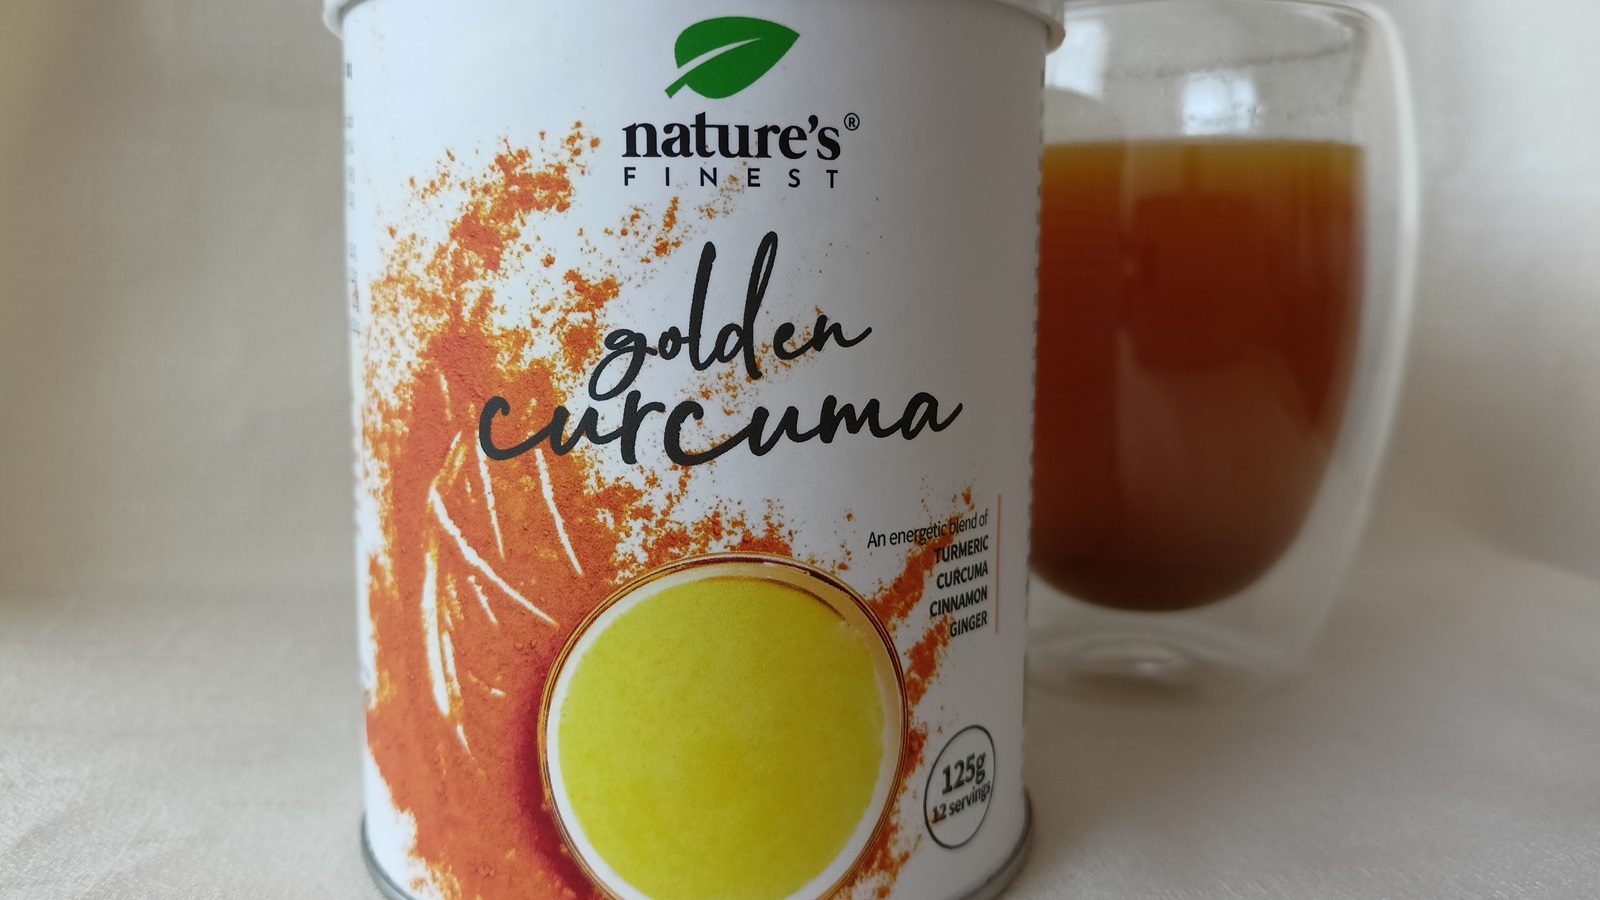 Recenze: Vyzkoušeli jsme Golden Curcuma Herbal Latté od Nature’s Finest